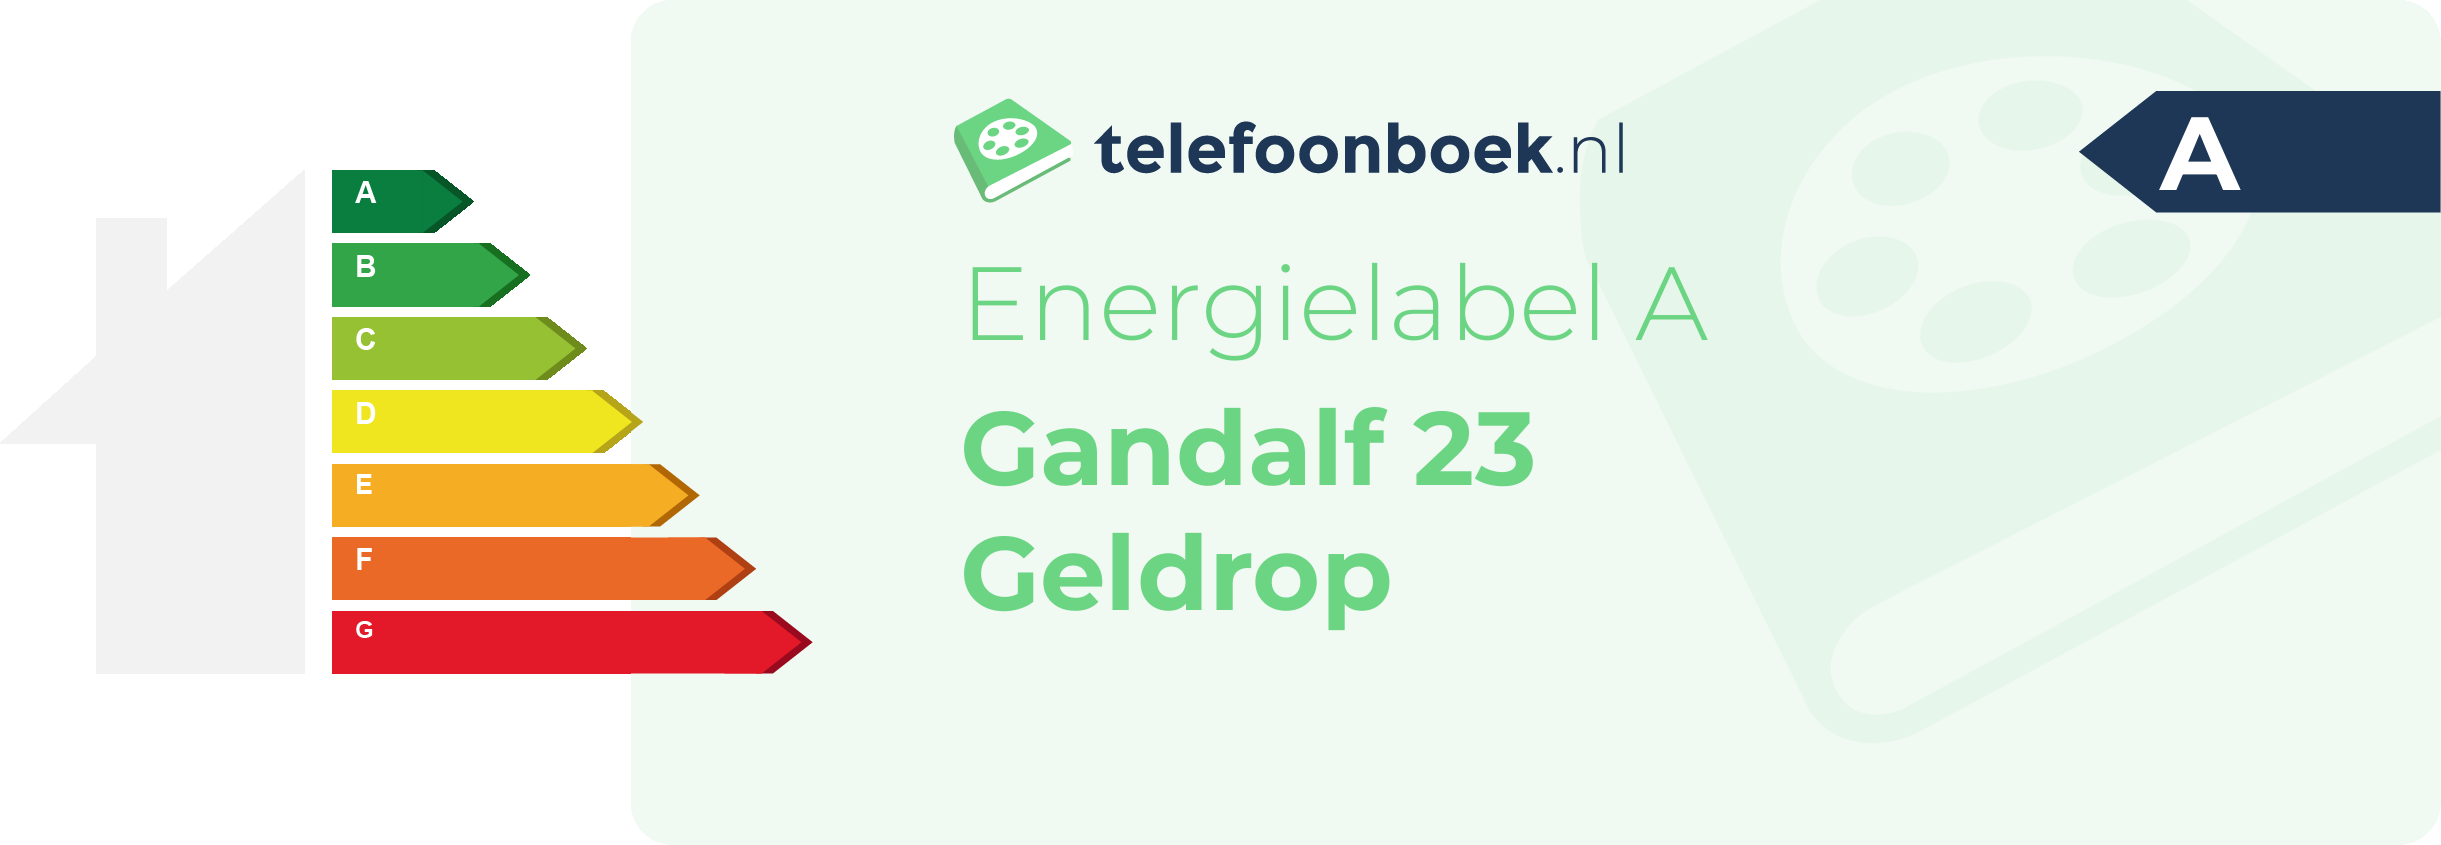 Energielabel Gandalf 23 Geldrop